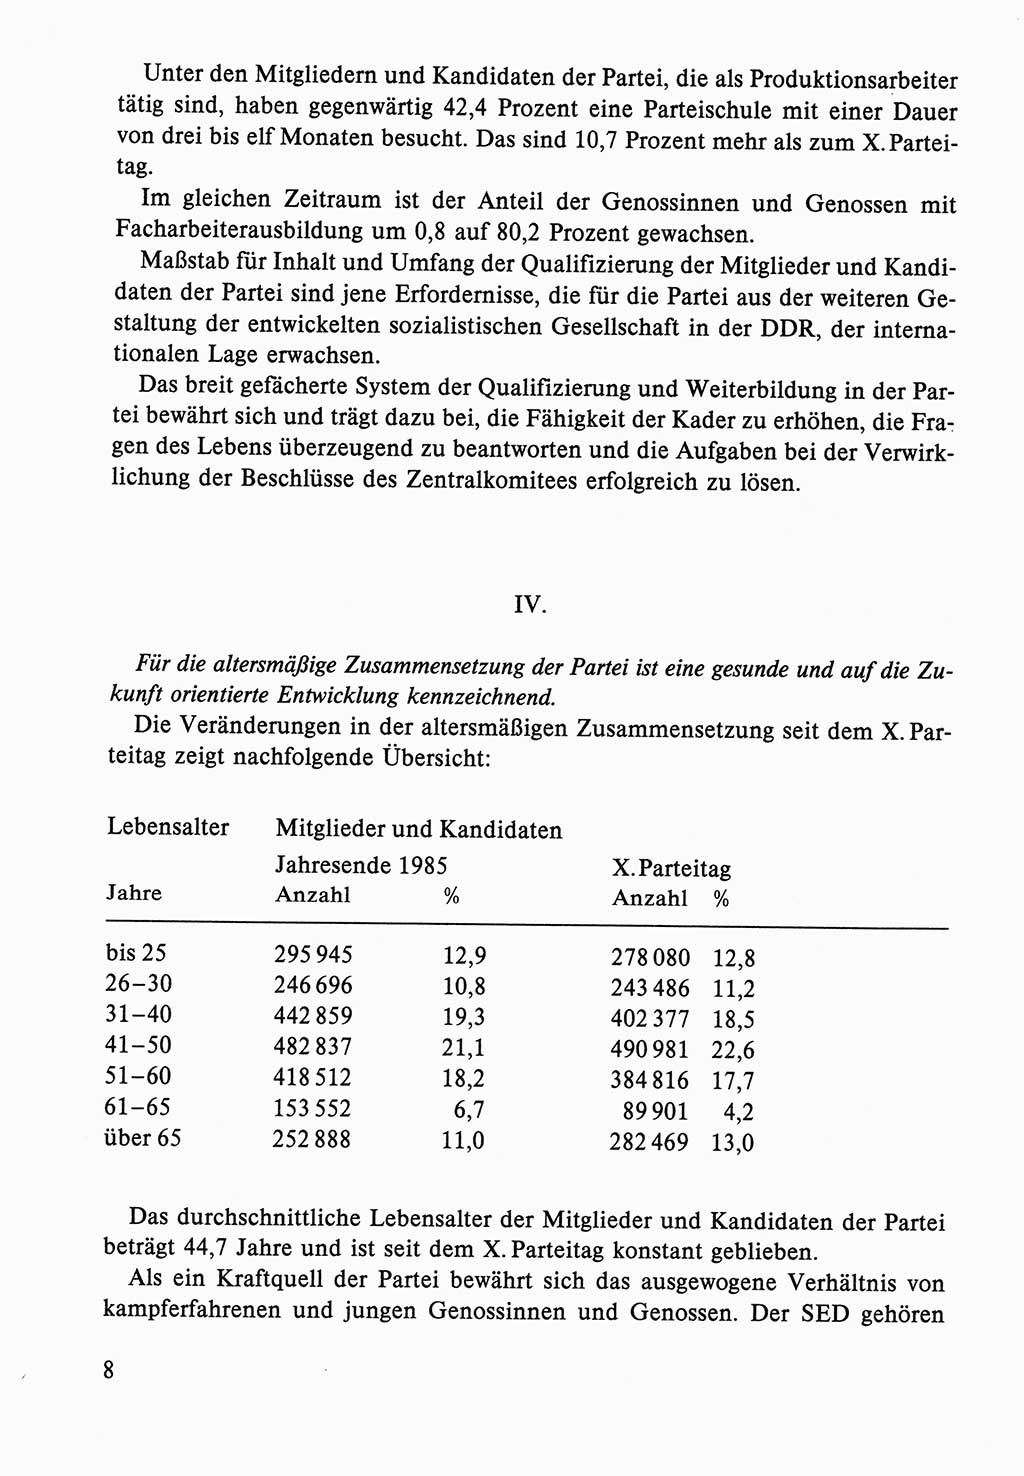 Dokumente der Sozialistischen Einheitspartei Deutschlands (SED) [Deutsche Demokratische Republik (DDR)] 1986-1987, Seite 8 (Dok. SED DDR 1986-1987, S. 8)